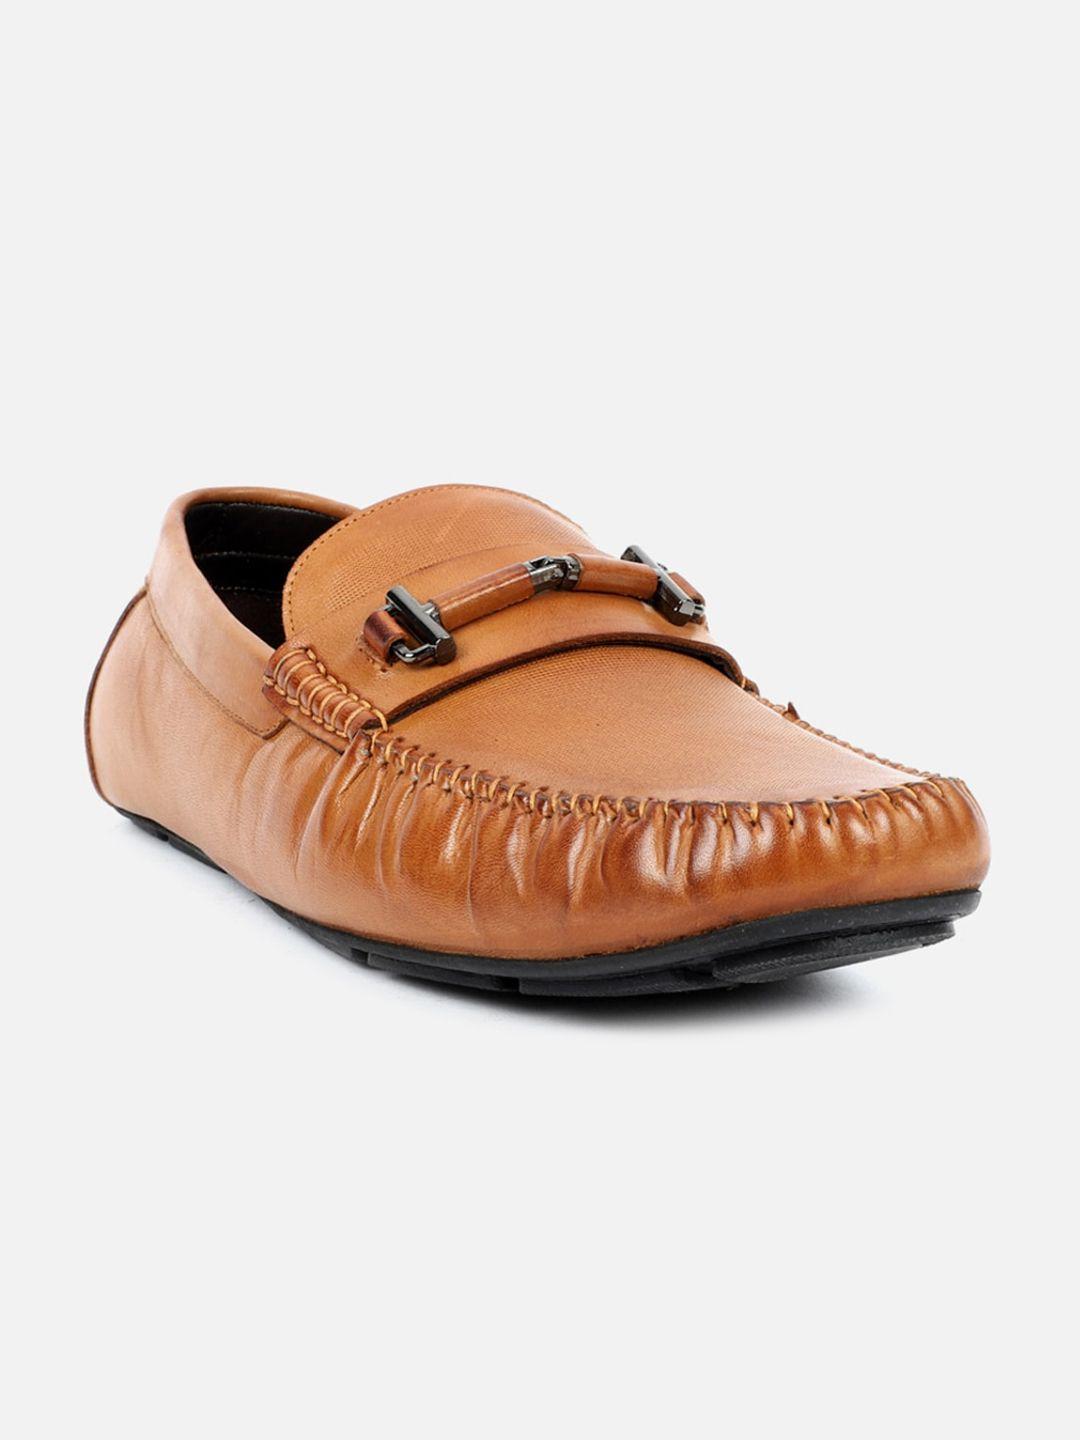 carlton london men leather horsebit driving shoes